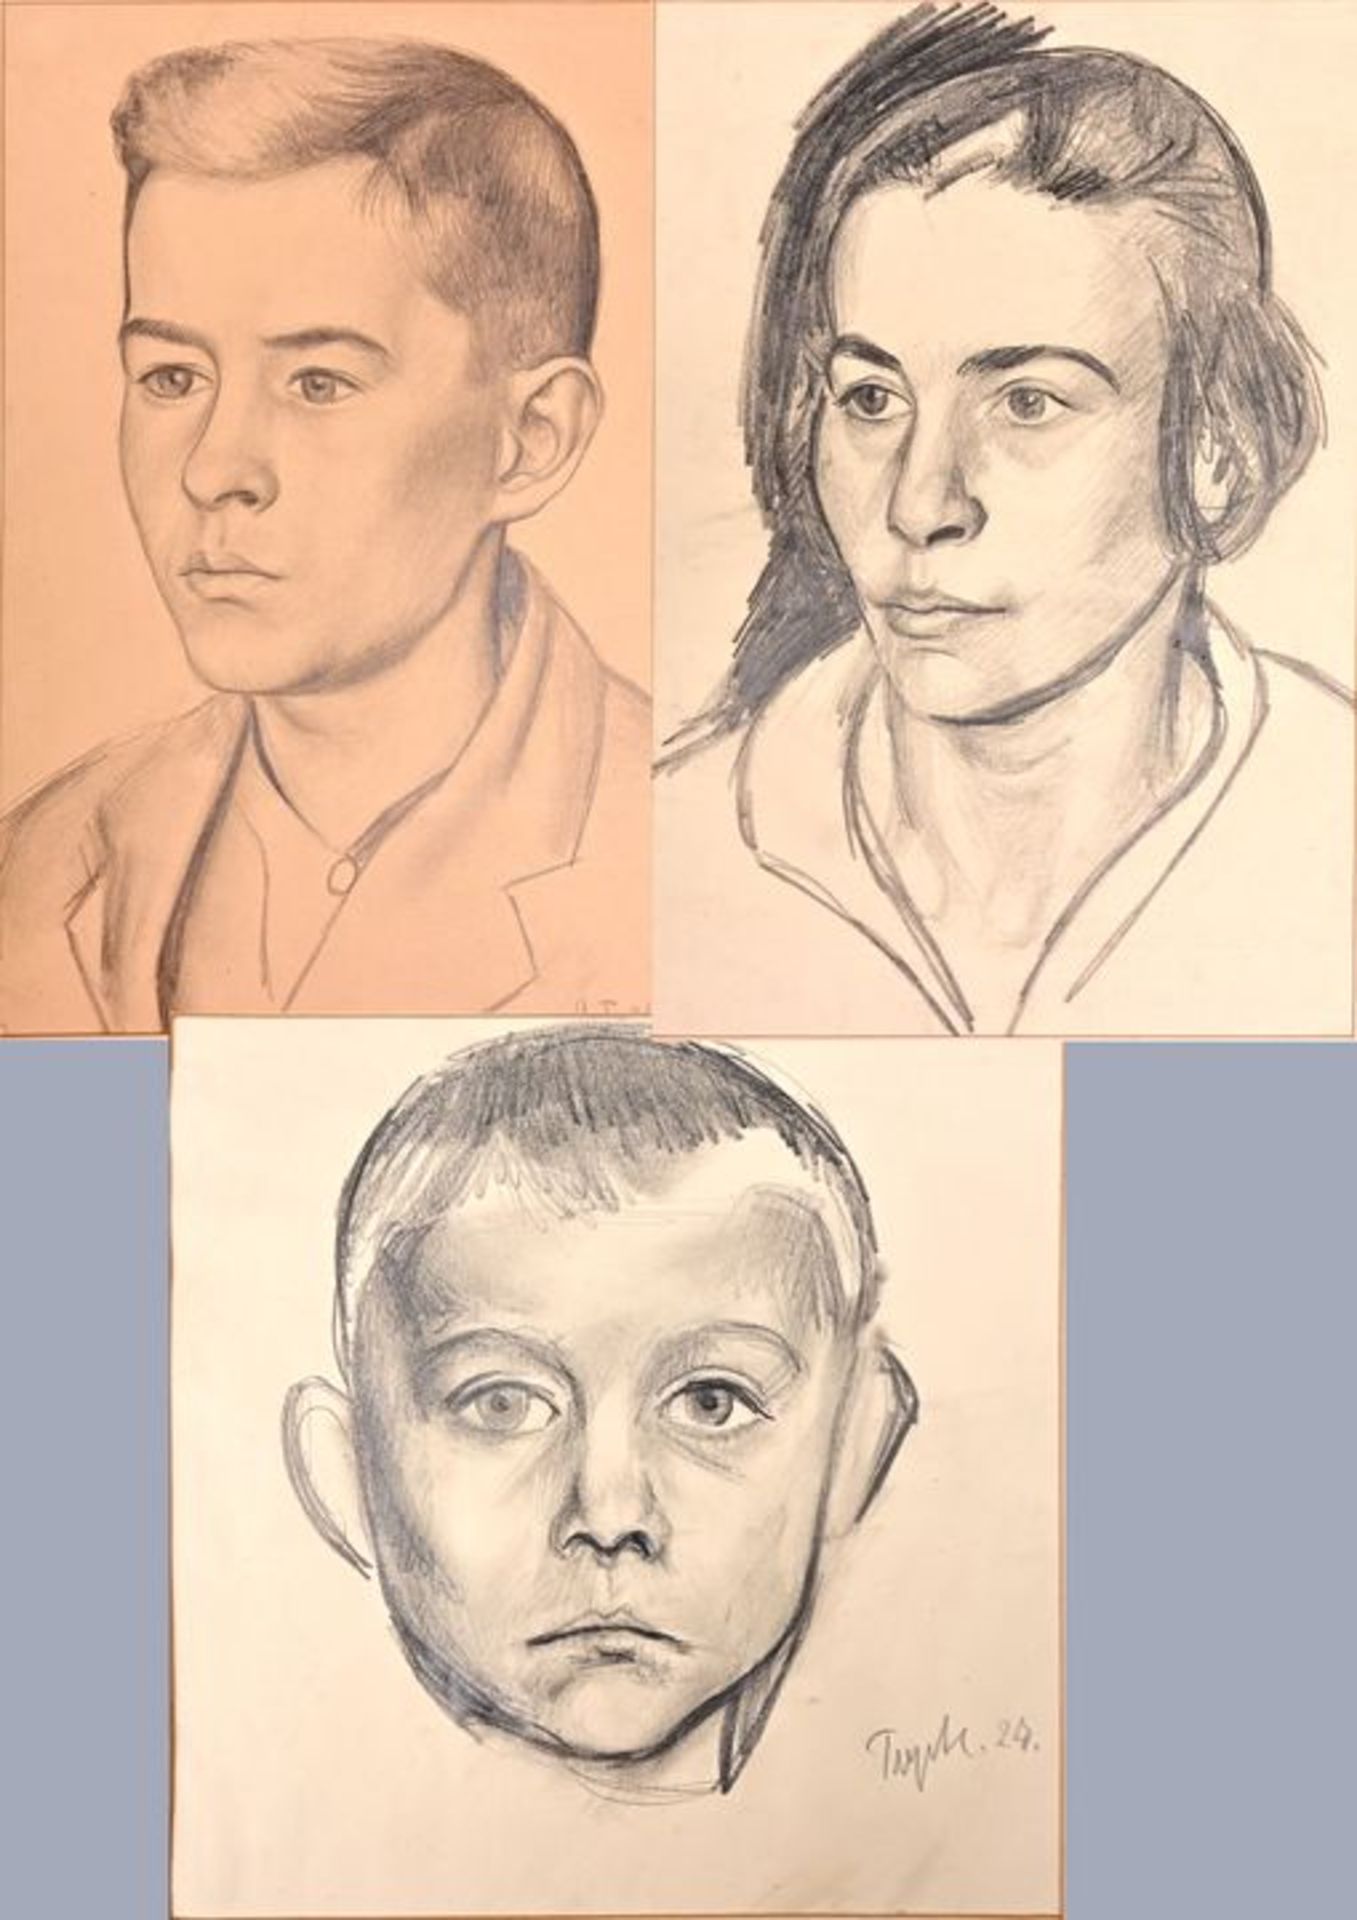 Trepte, 3 Portraits / Trepte, Portraits